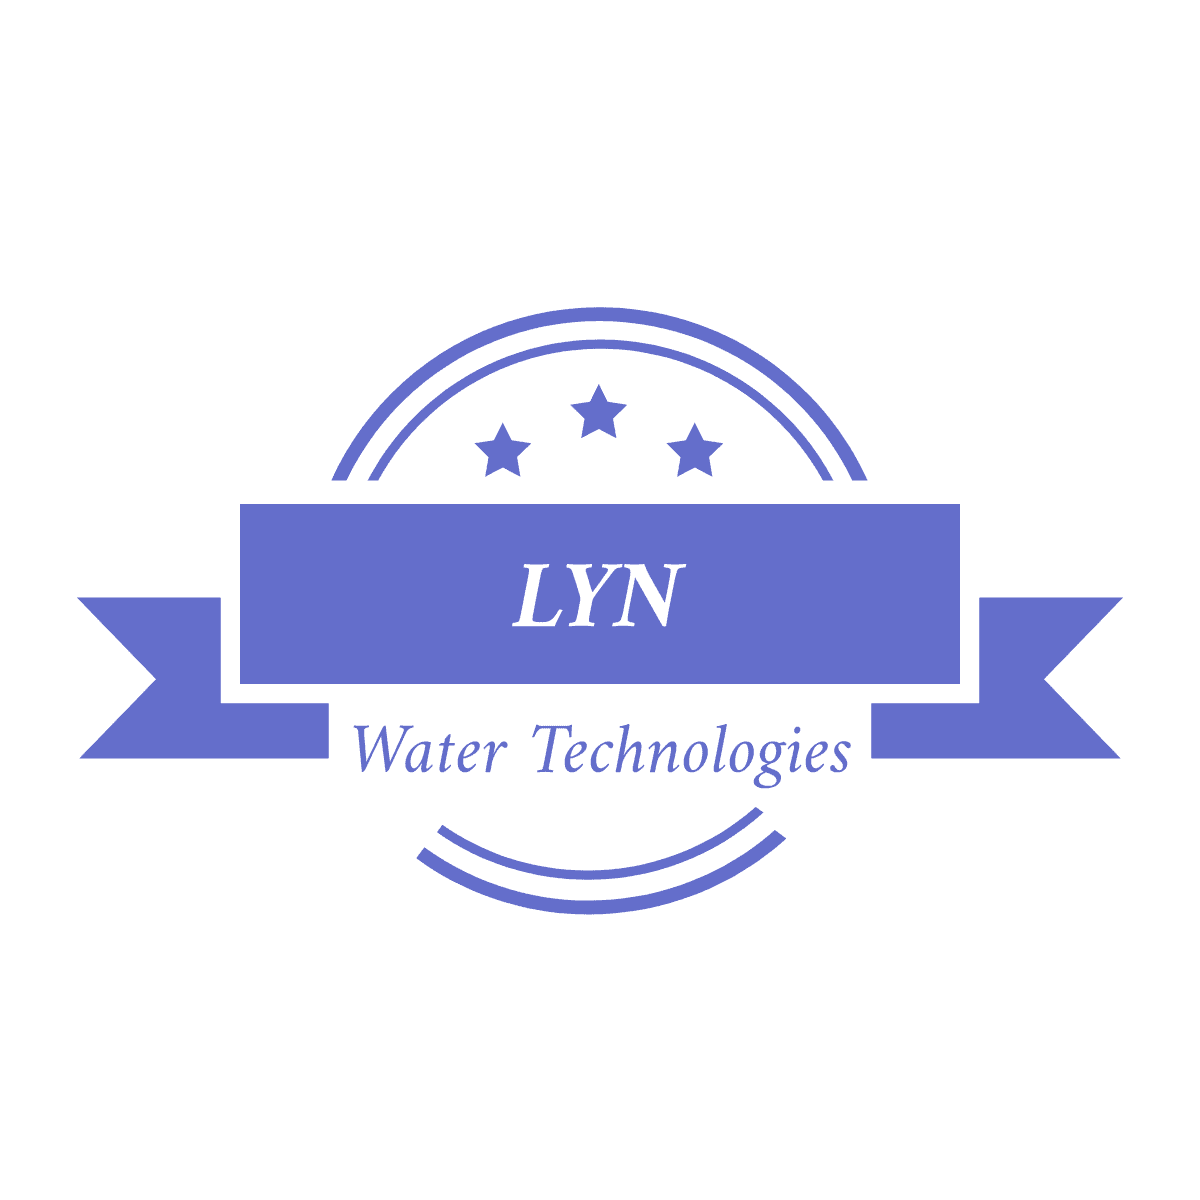 LYN WATER TECHNOLOGIES